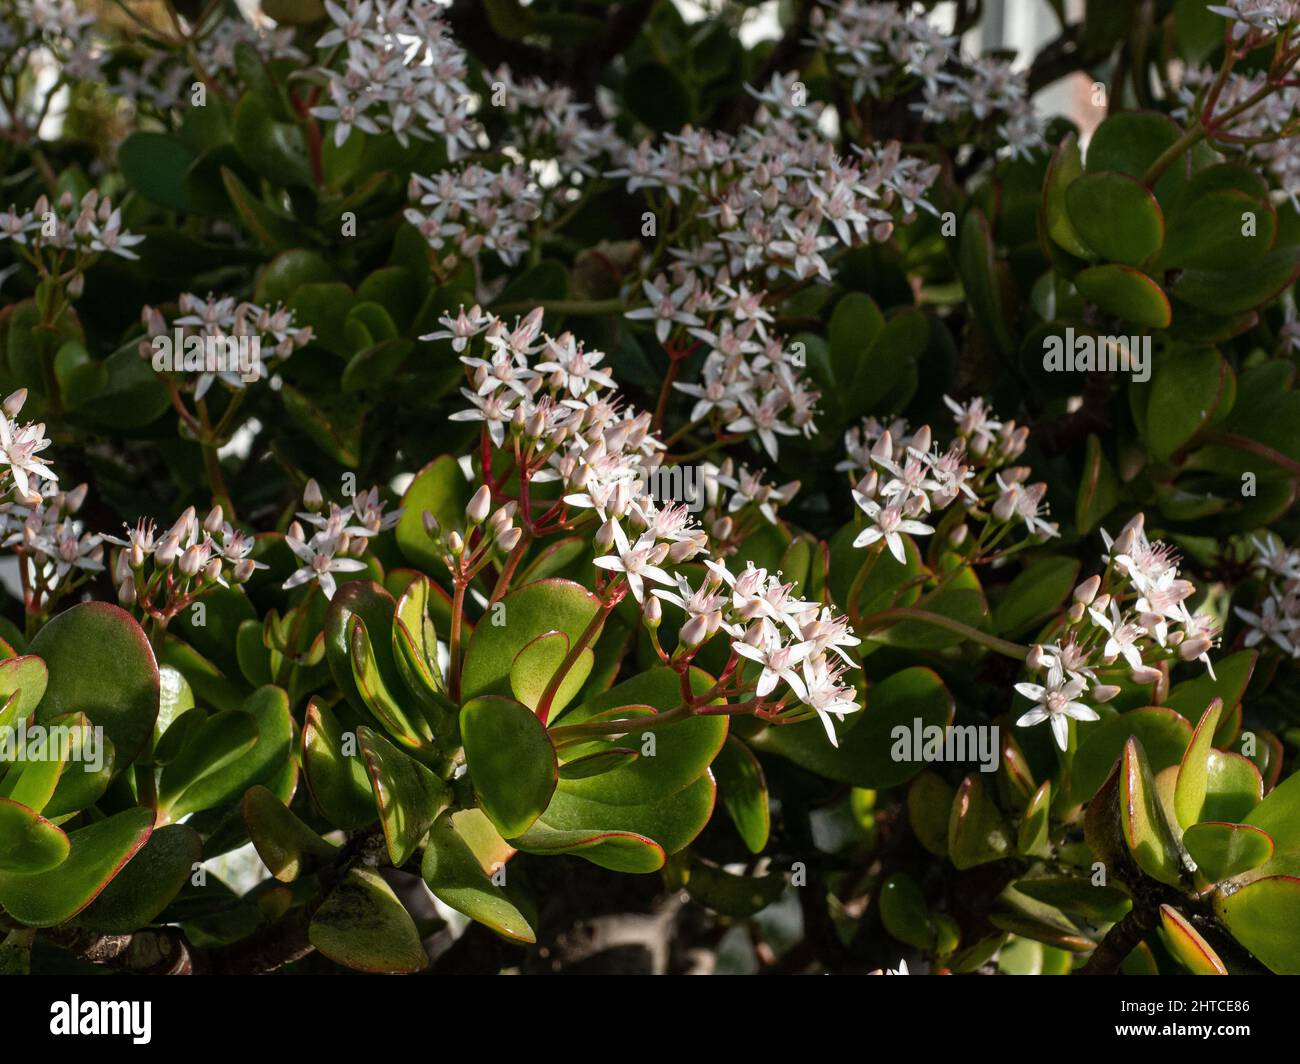 Les petites fleurs blanches en forme d'étoile de la plante de Jade Crassula ovata contre le feuillage charnel vert clair. Banque D'Images